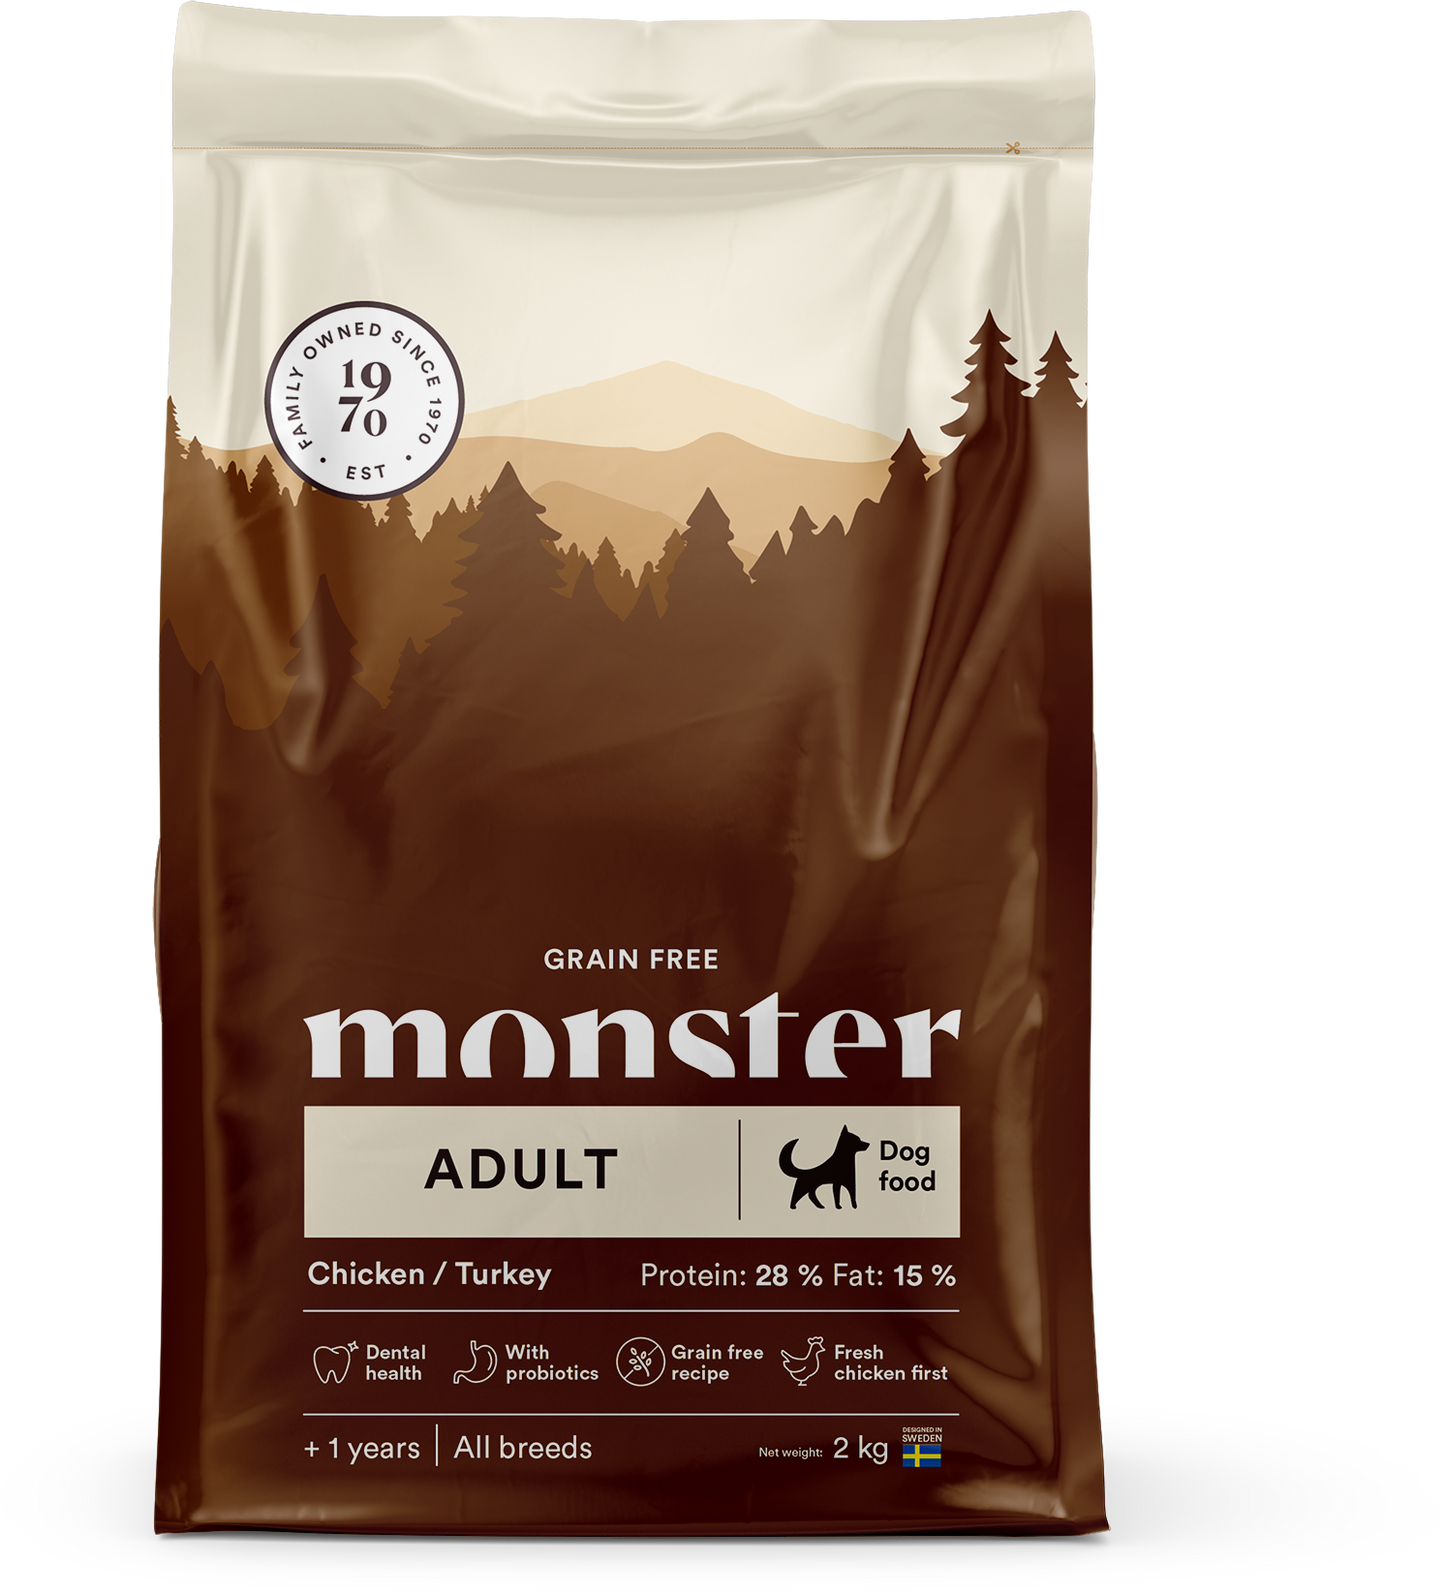 Monster Grain Free Adult Chicken/Turkey